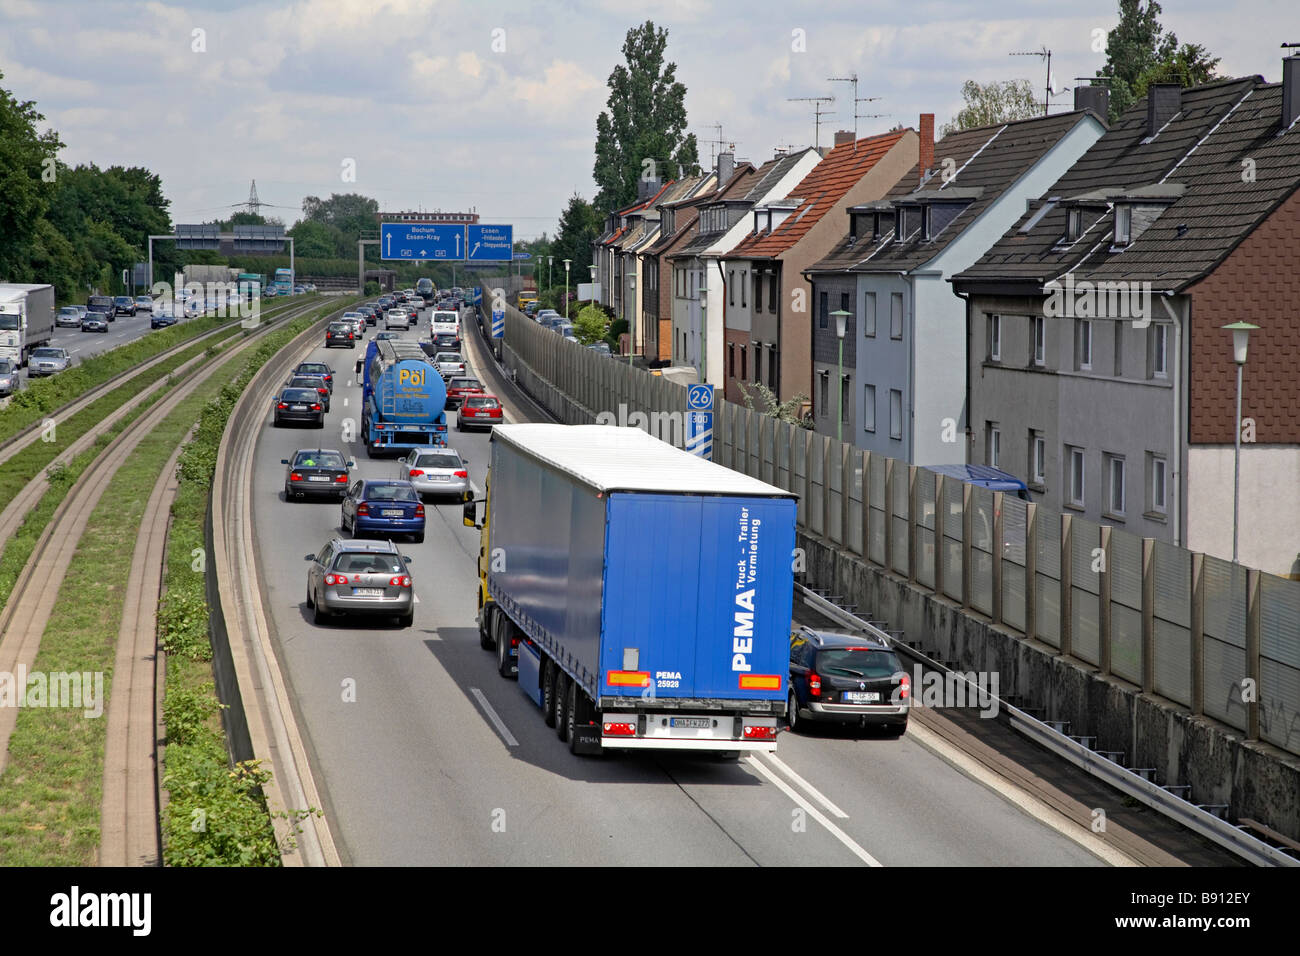 Autostrada trafficata vicino ad una zona di alloggiamento, Essen, Germania Foto Stock